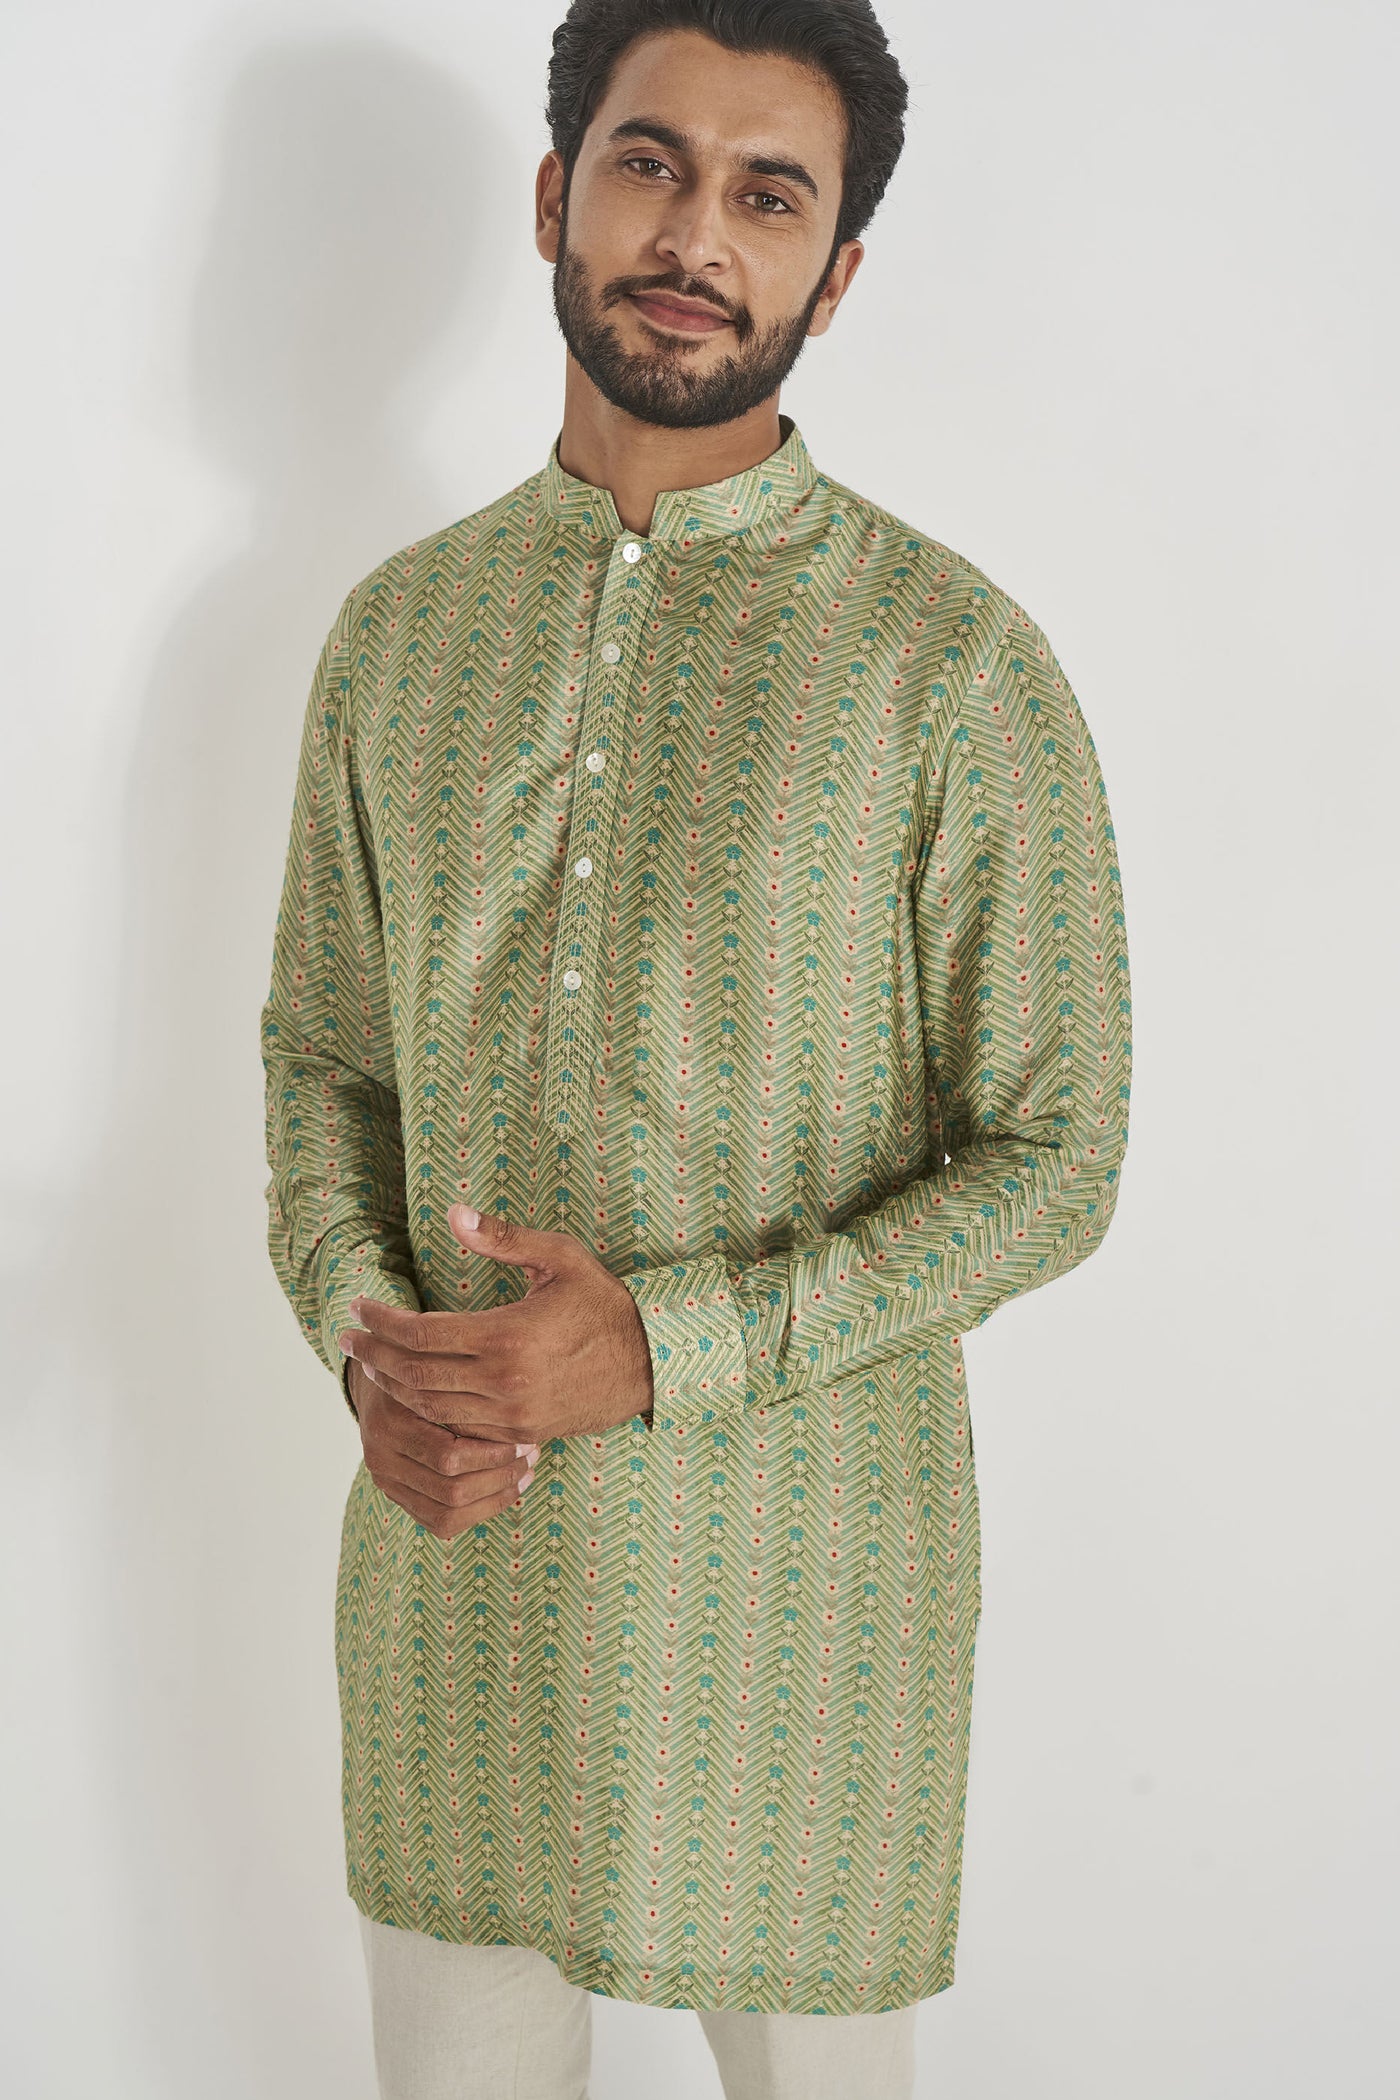 Anita Dongre Menswear Gihan Kurta Sage Green Indian designer wear online shopping melange singapore